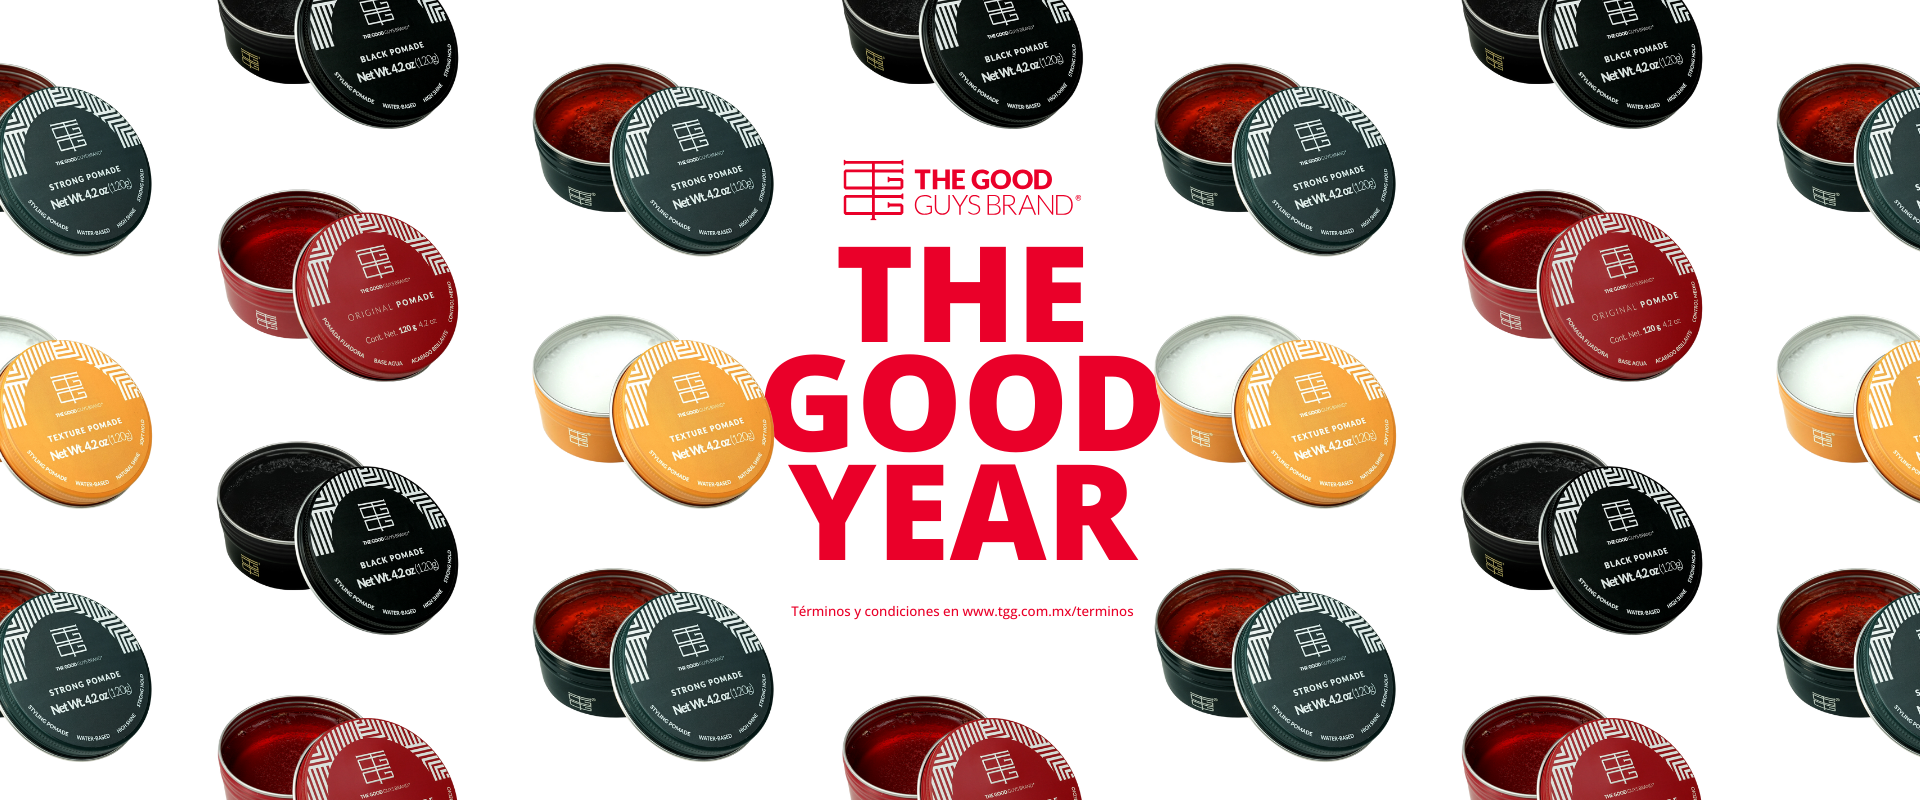 Promoción The Good Year